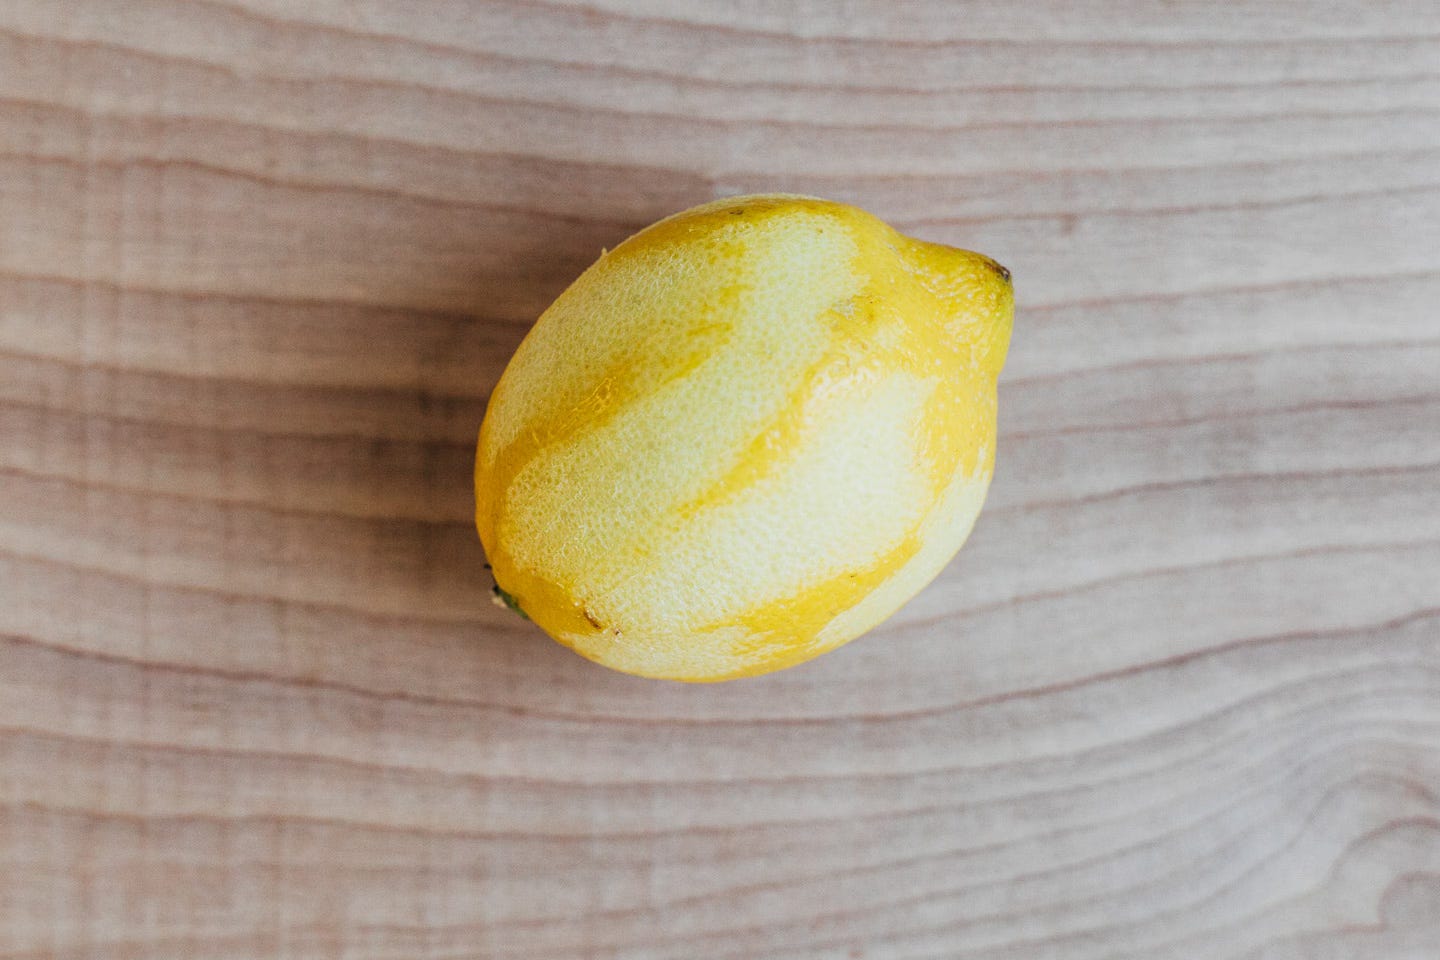 A zested lemon